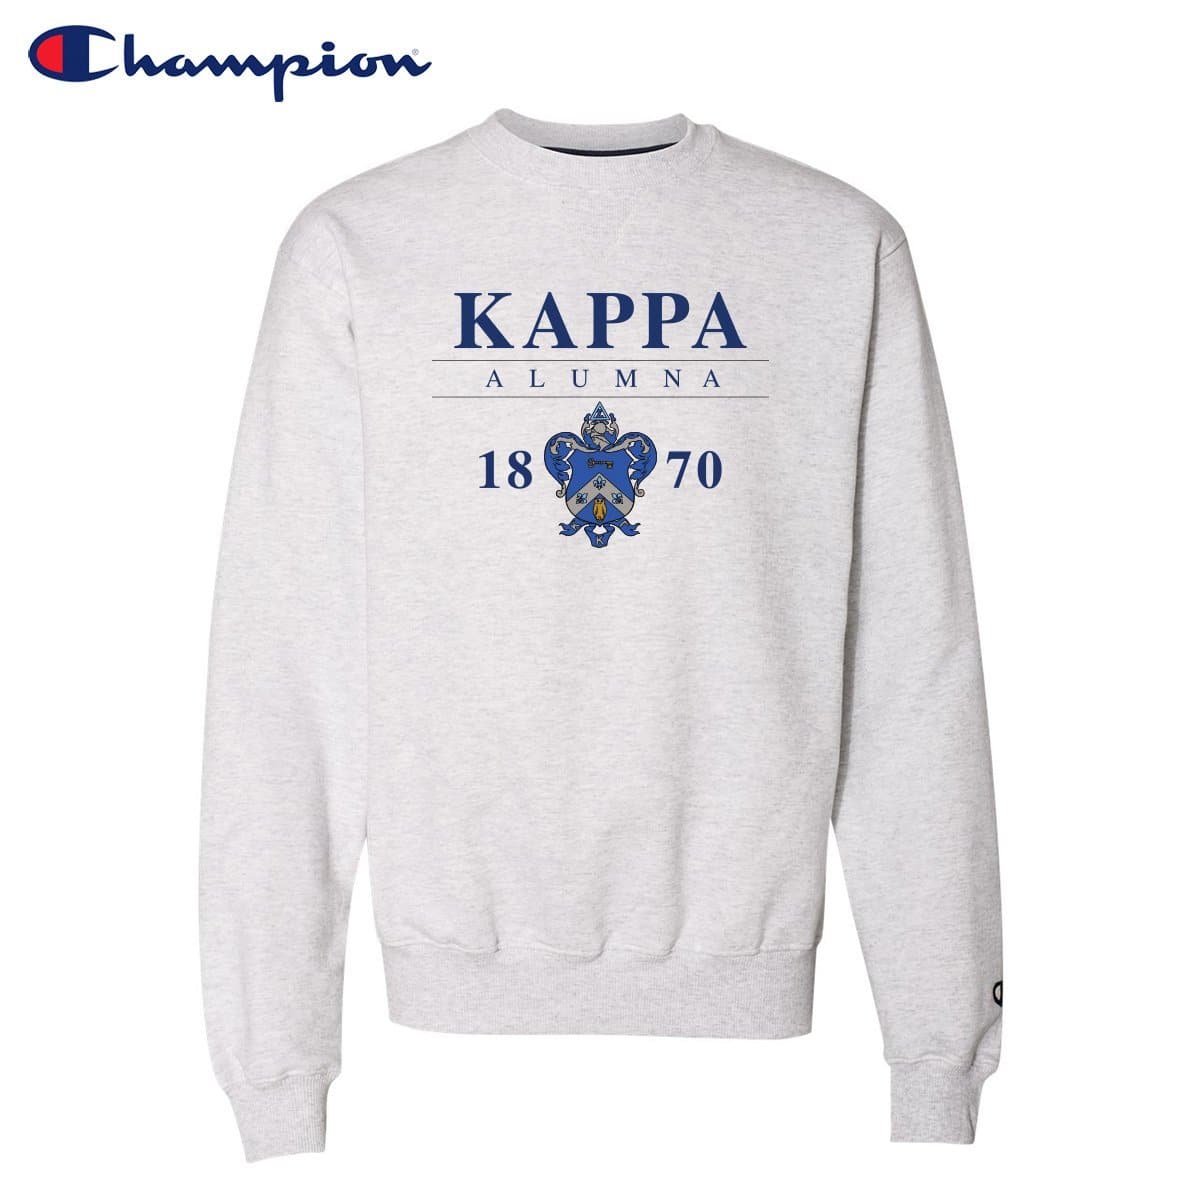 Kappa Alumni Champion Sweatshirt | Kappa Kappa Gamma | Sweatshirts > Crewneck sweatshirts